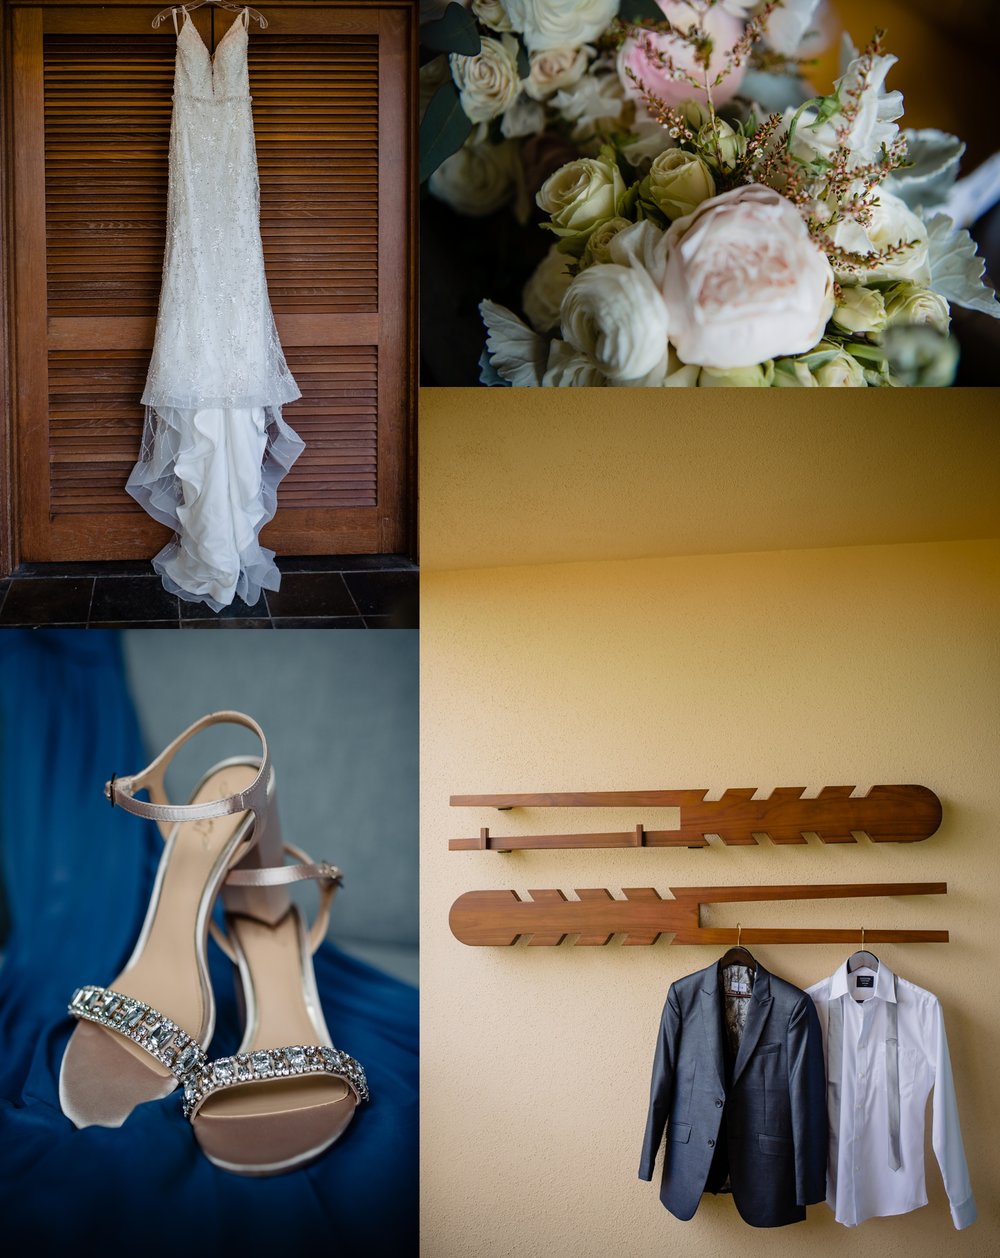 wedding details: dress, flowers, shoes, suit